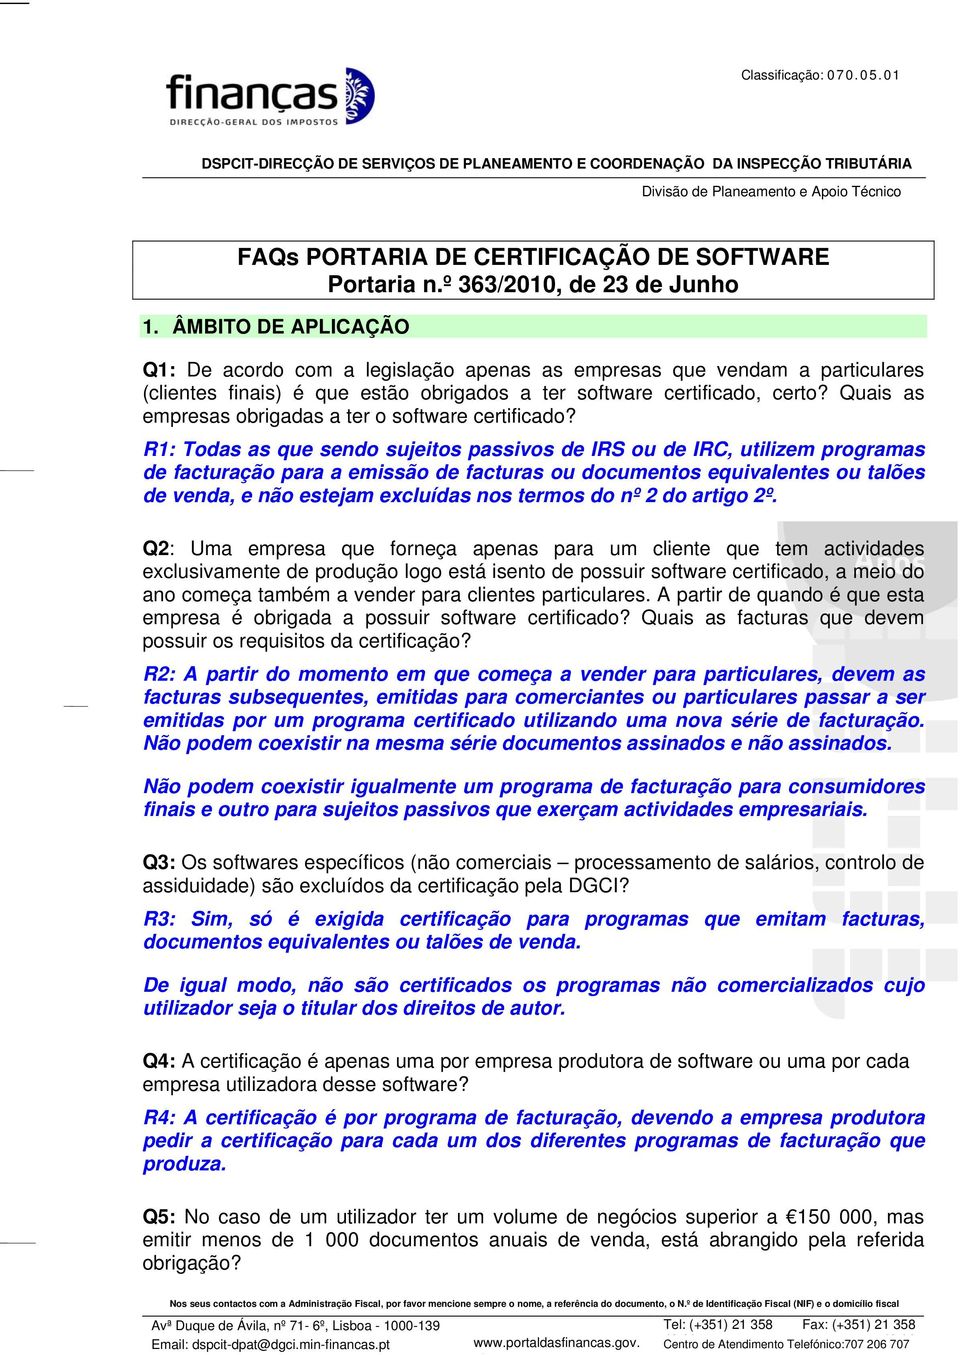 Quais as empresas obrigadas a ter o software certificado?